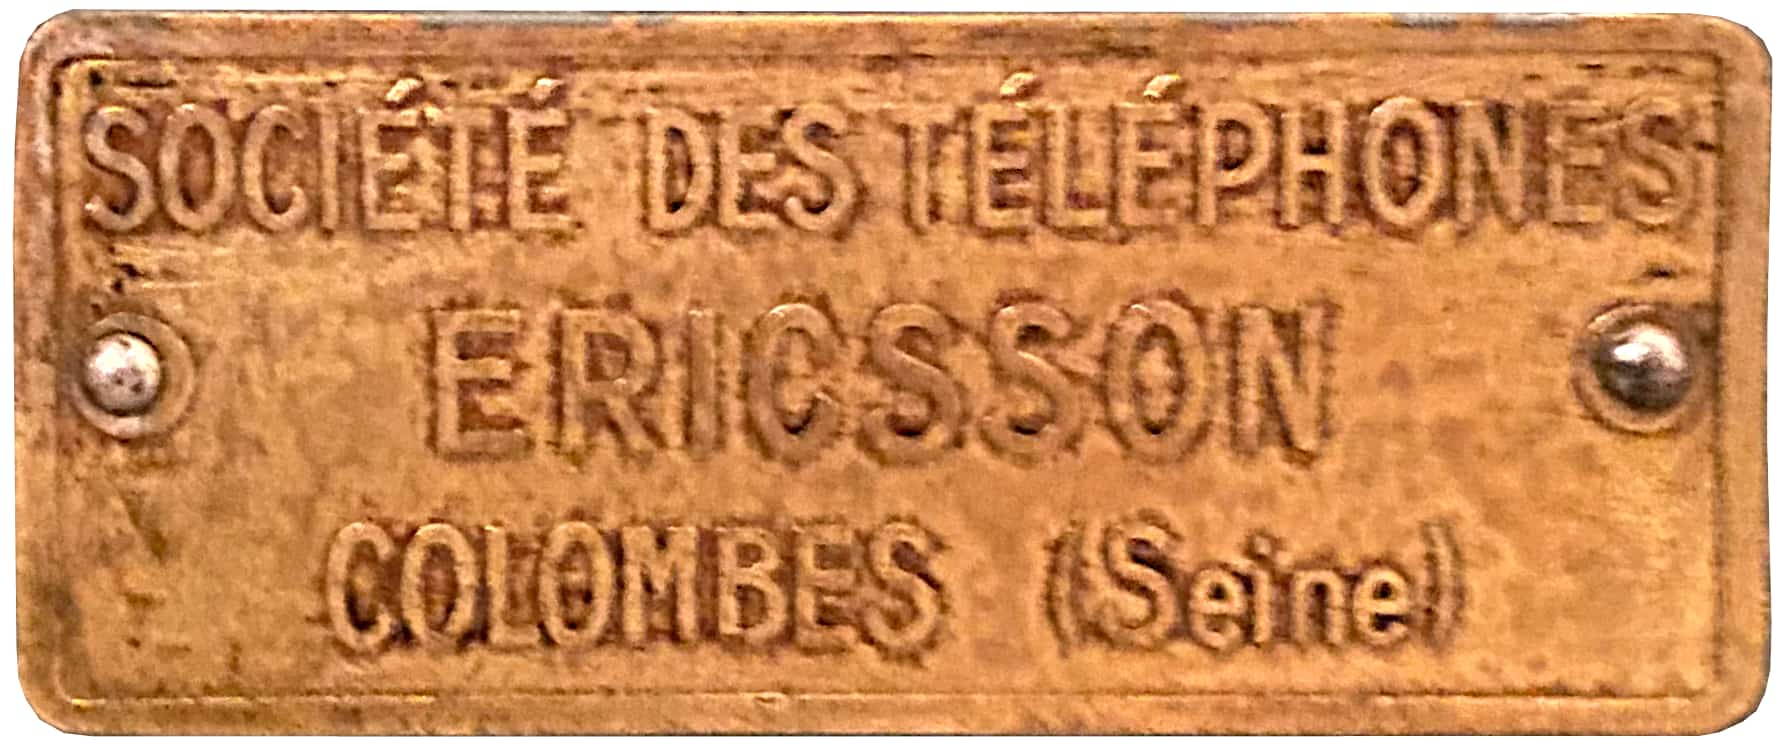 Société des Téléphones Ericsson